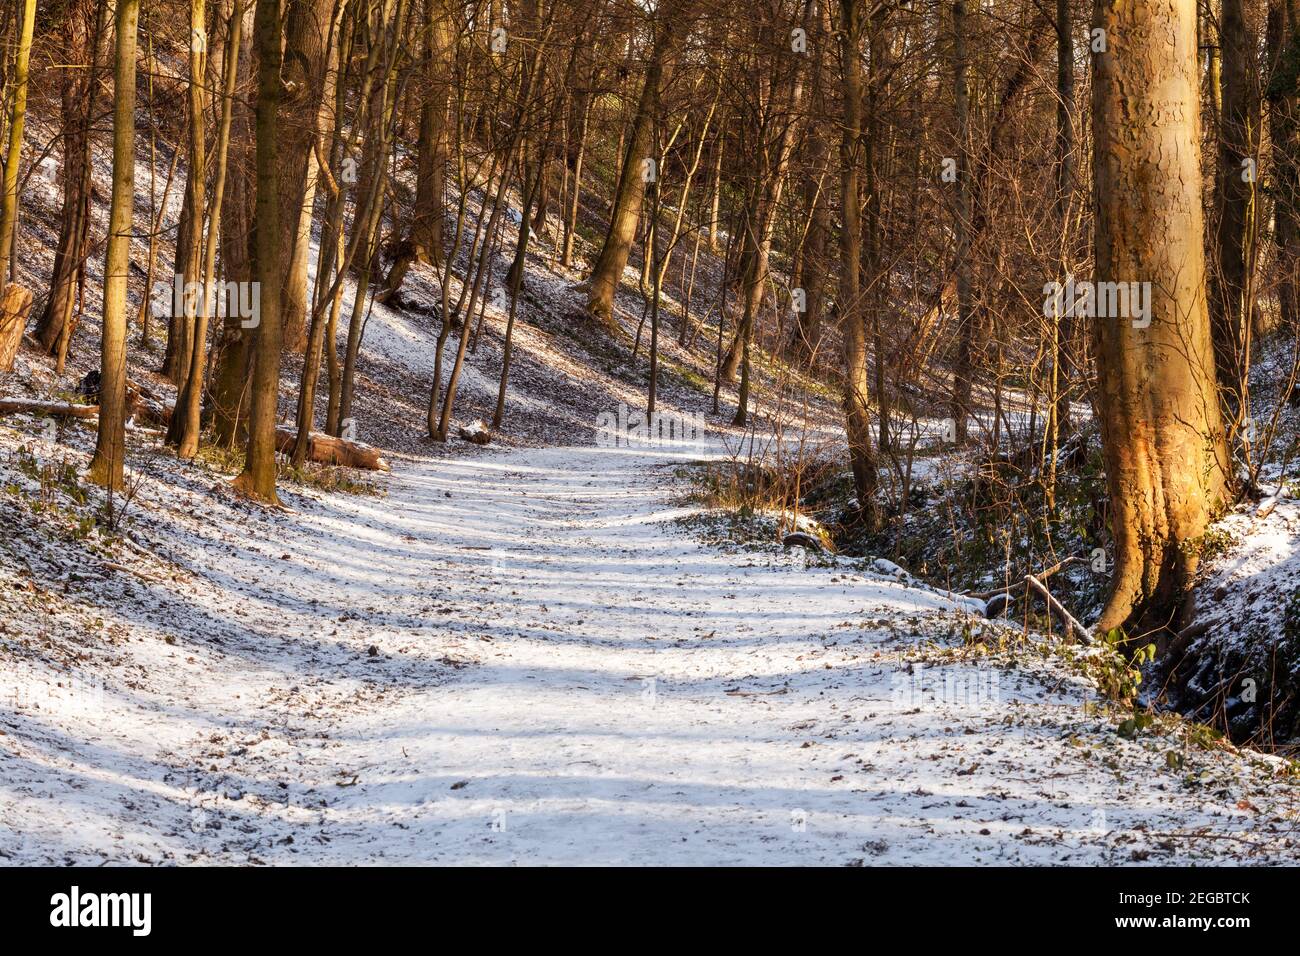 Eine breite, von Bäumen gesäumte, geschwungene und schneebedeckte Strecke durch Wälder im Winter mit Sonne, die durch die Bäume strömt Stockfoto